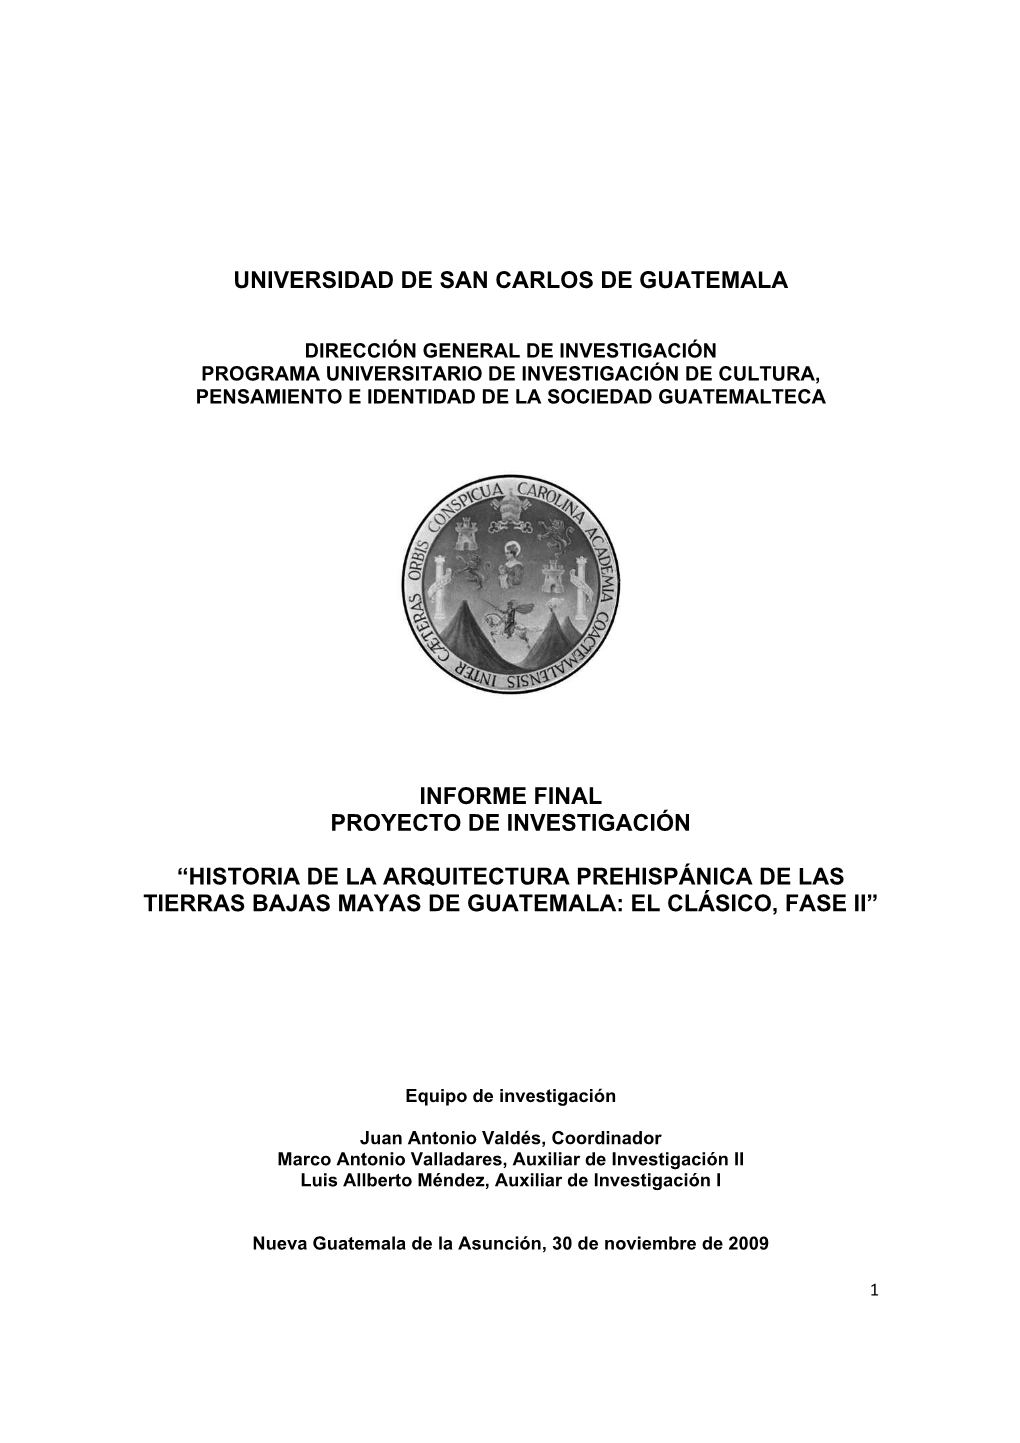 Informe Final Proyecto De Investigación “Historia De La Arquitectura Prehispánica De Las Tierras Bajas Mayas De Guatemala: El Clásico, Fase